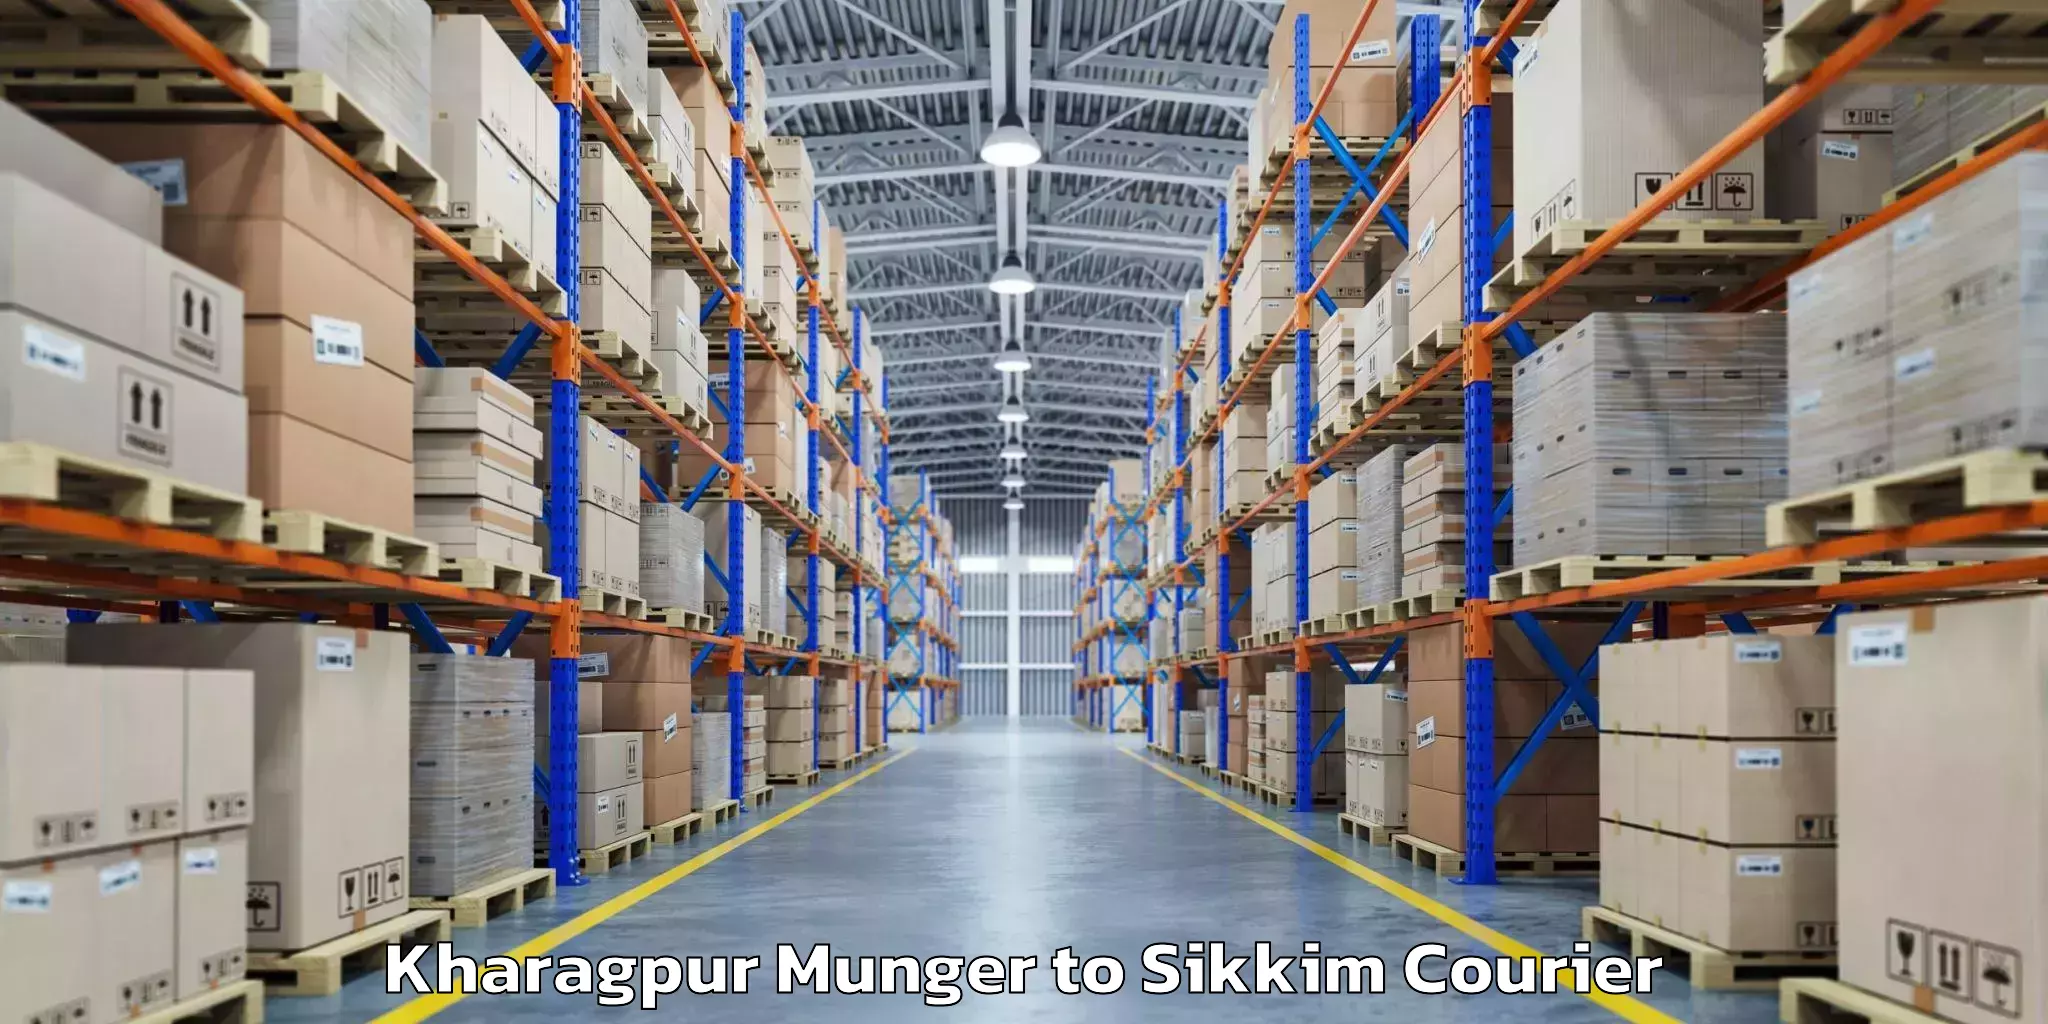 Baggage transport updates Kharagpur Munger to Gangtok